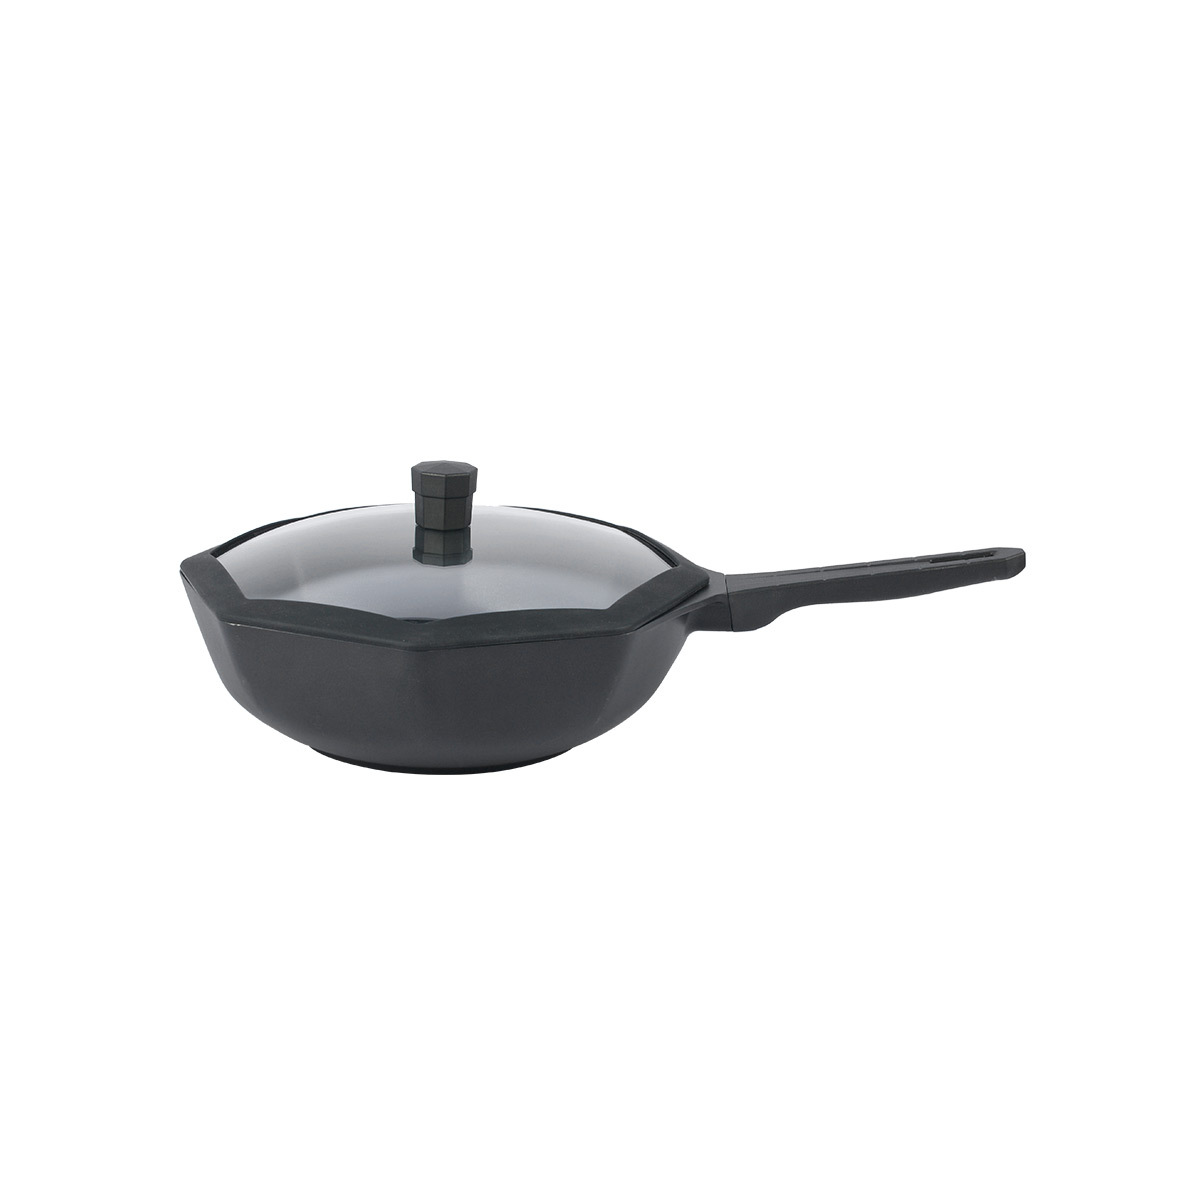 Octagon Non-Stick Frying Pan With Lid
panci anti lengket, alat masak